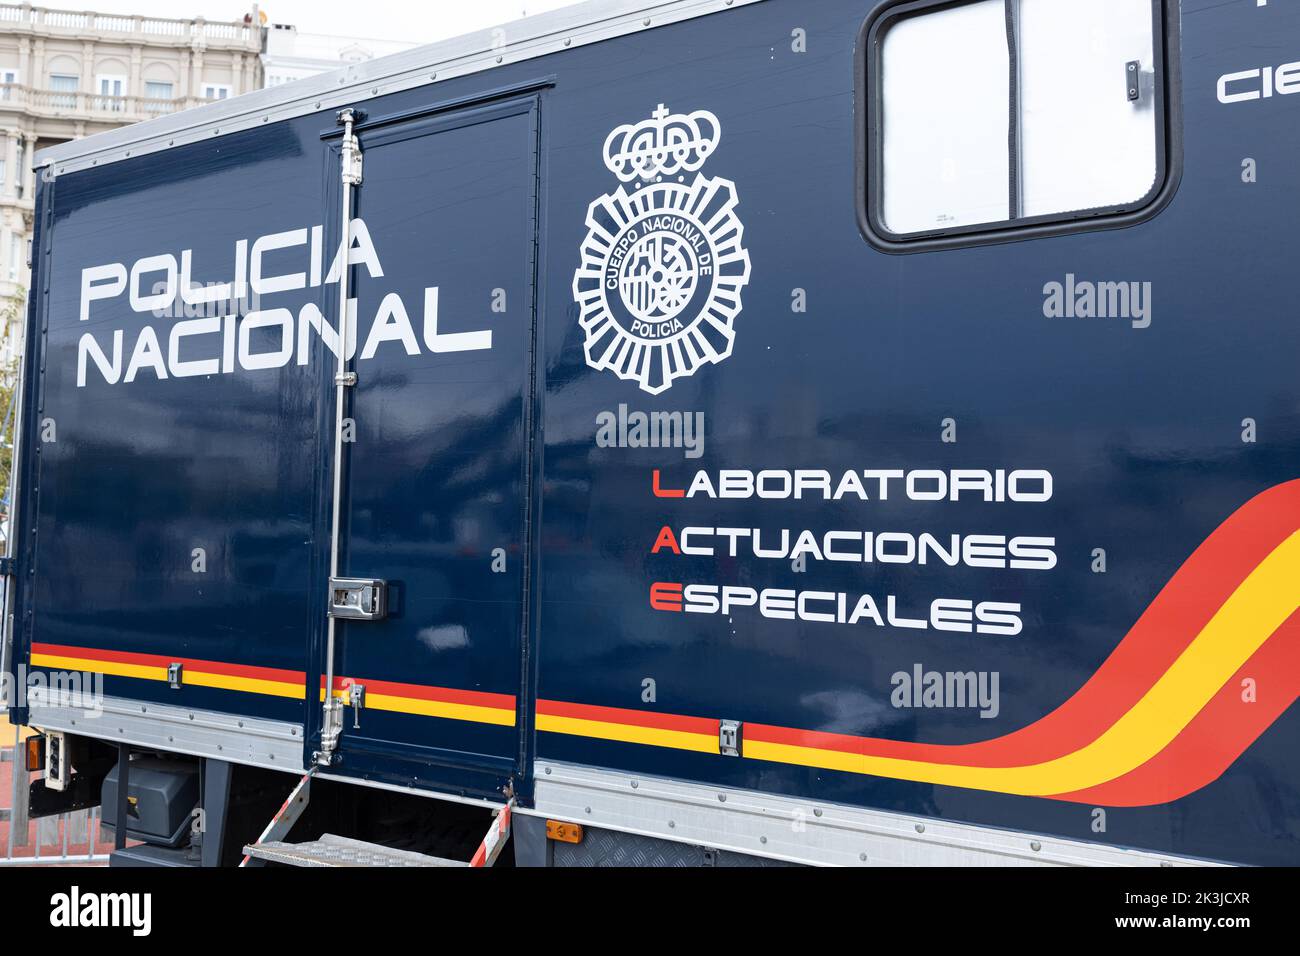 La Coruna, Spanien; 23. september 2022: La Coruna, Spanien; 23. september 2022: Policia Nacional Labotatorio Actuaciones Especiales LKW der spanischen Natio Stockfoto